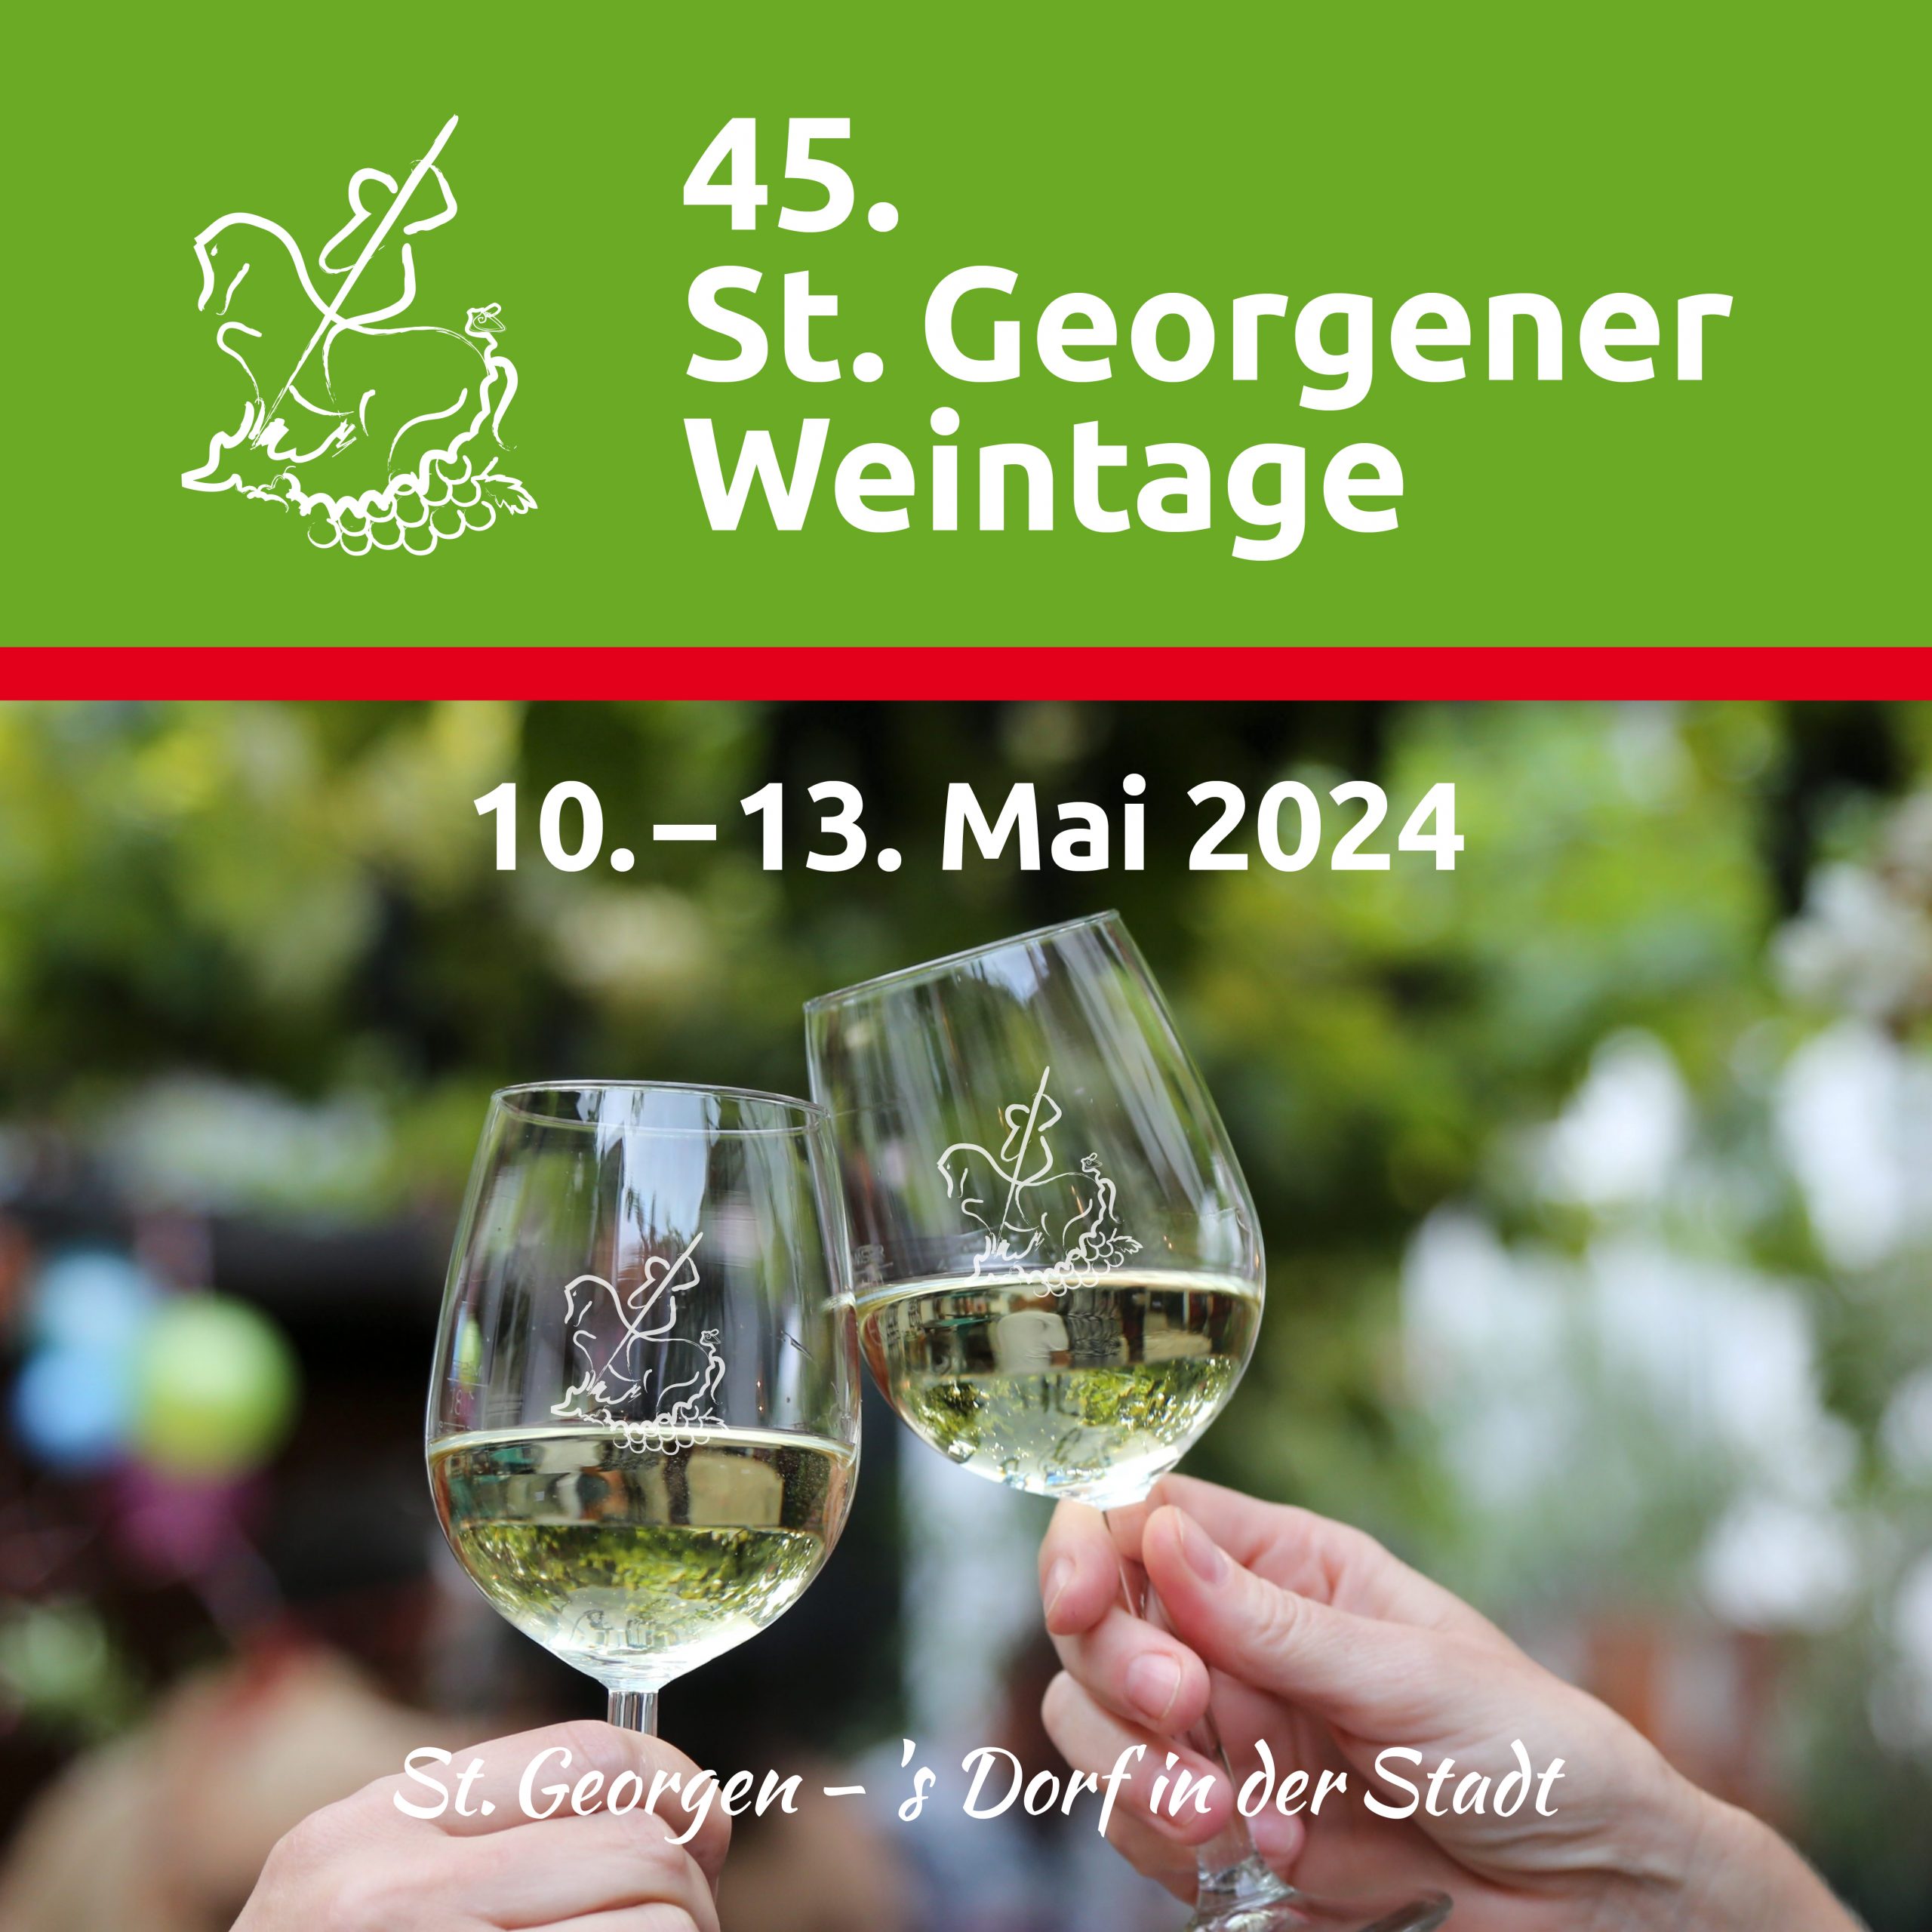 45. St. Georgener Weintage